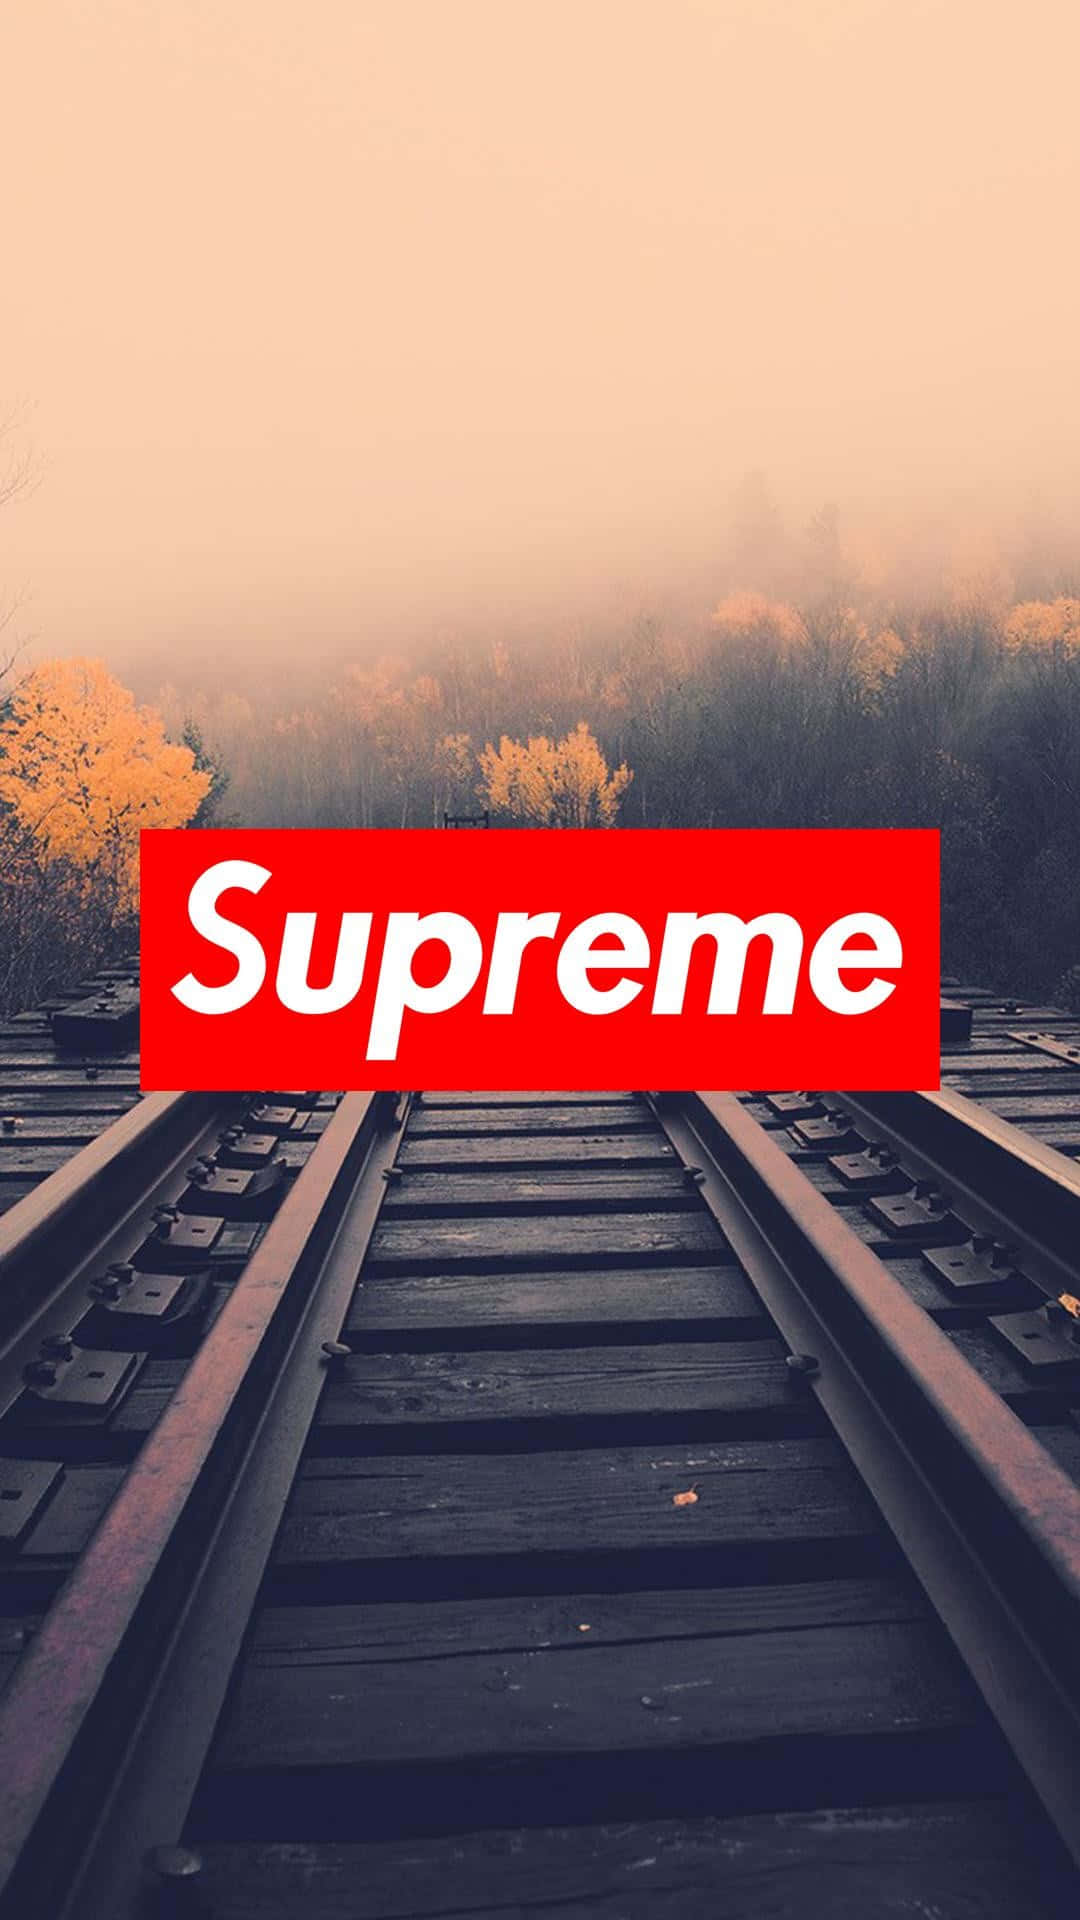 Logoet for Supreme, det ikoniske livstilsbrand, rider på en bølge af ild. Wallpaper